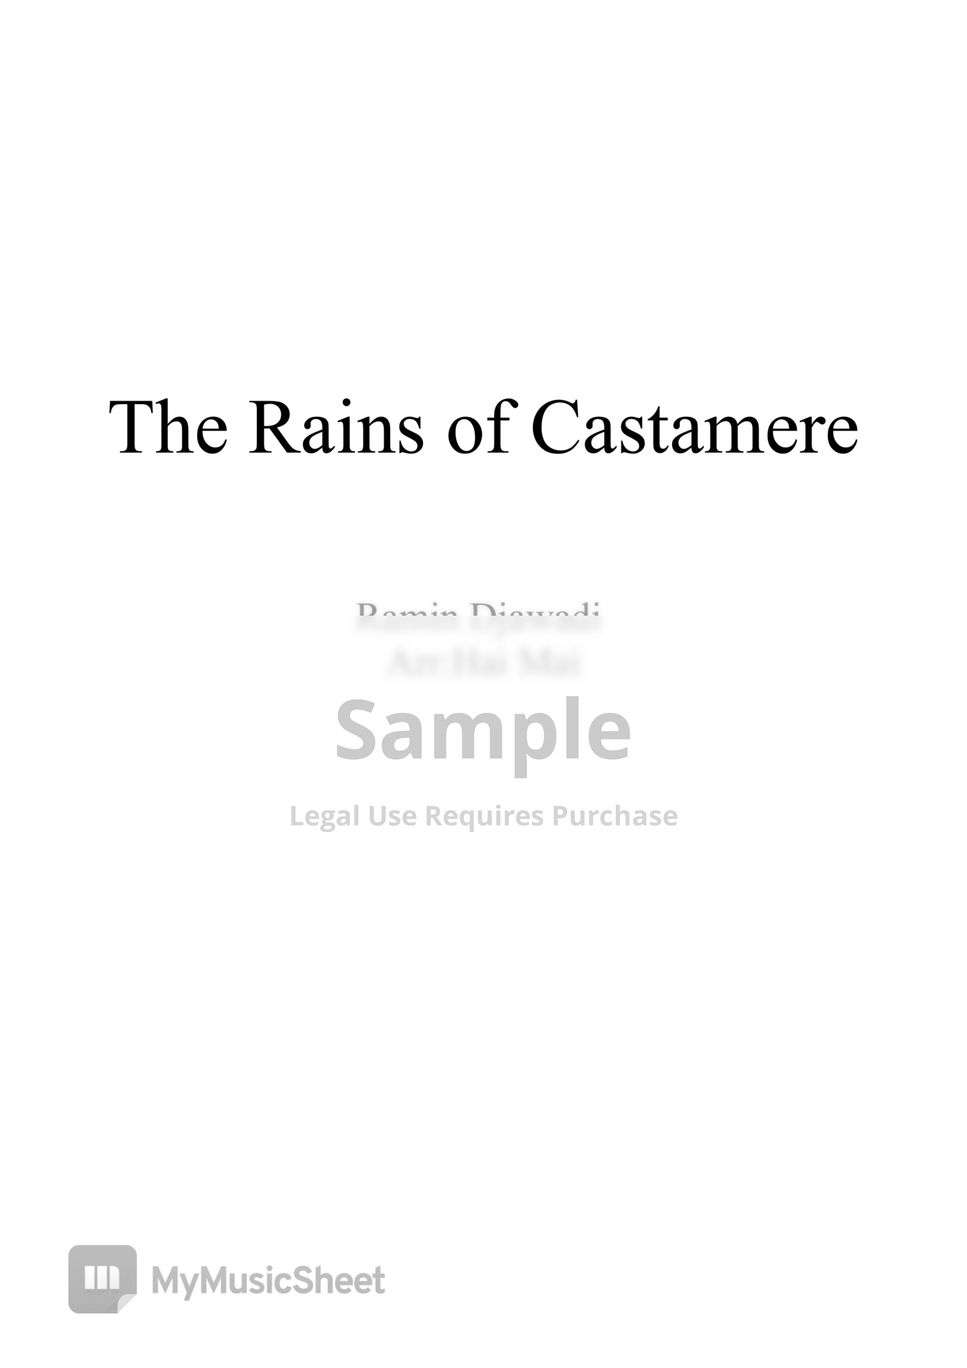 Ramin Djawadi - The Rains of Castamere for Cello solo by Hai Mai